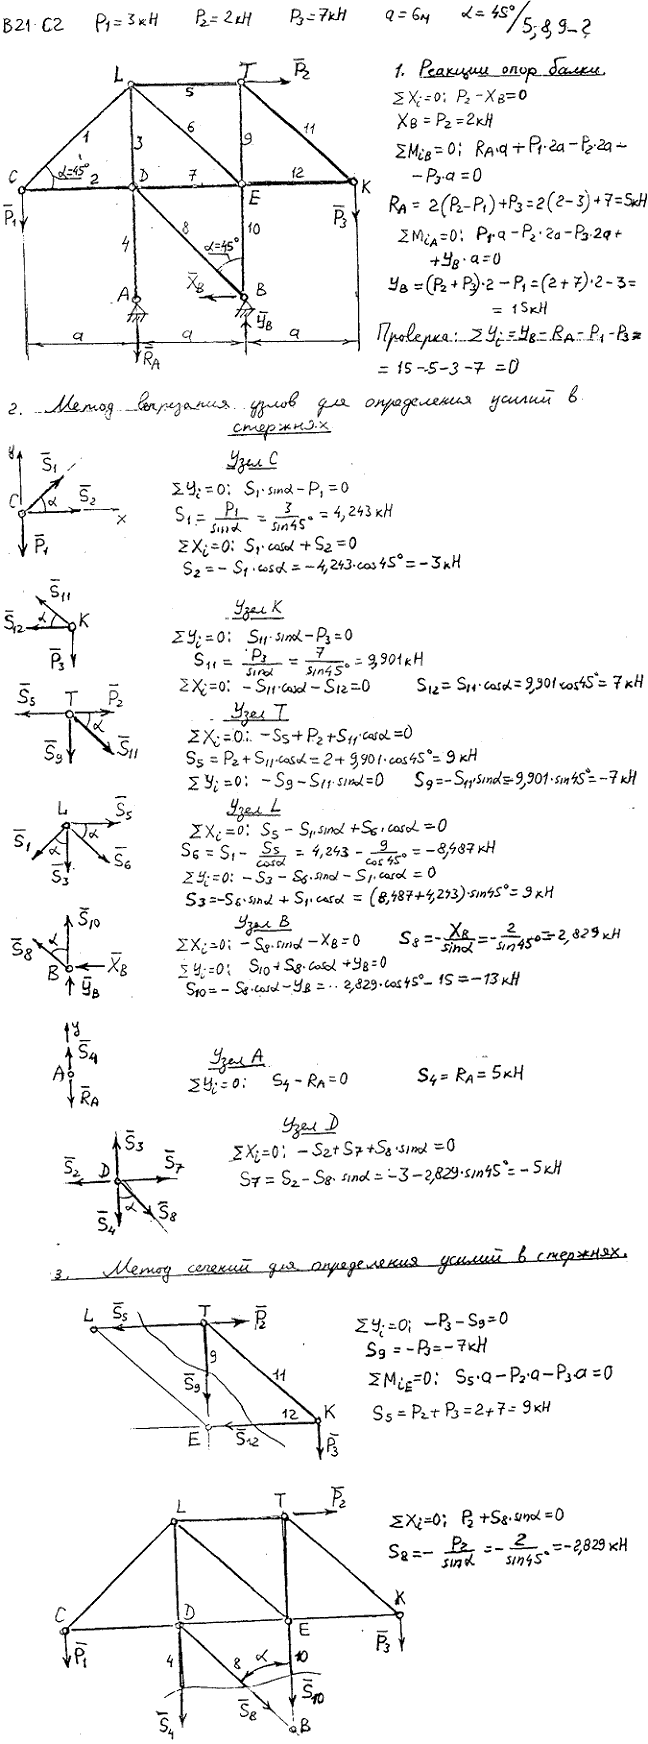 Задание C2 вариант 21. P1=3 кН, P2=2 кН, P3=7 кН, a=6 м, α=45 град, номер стержня 5, 8, 9.